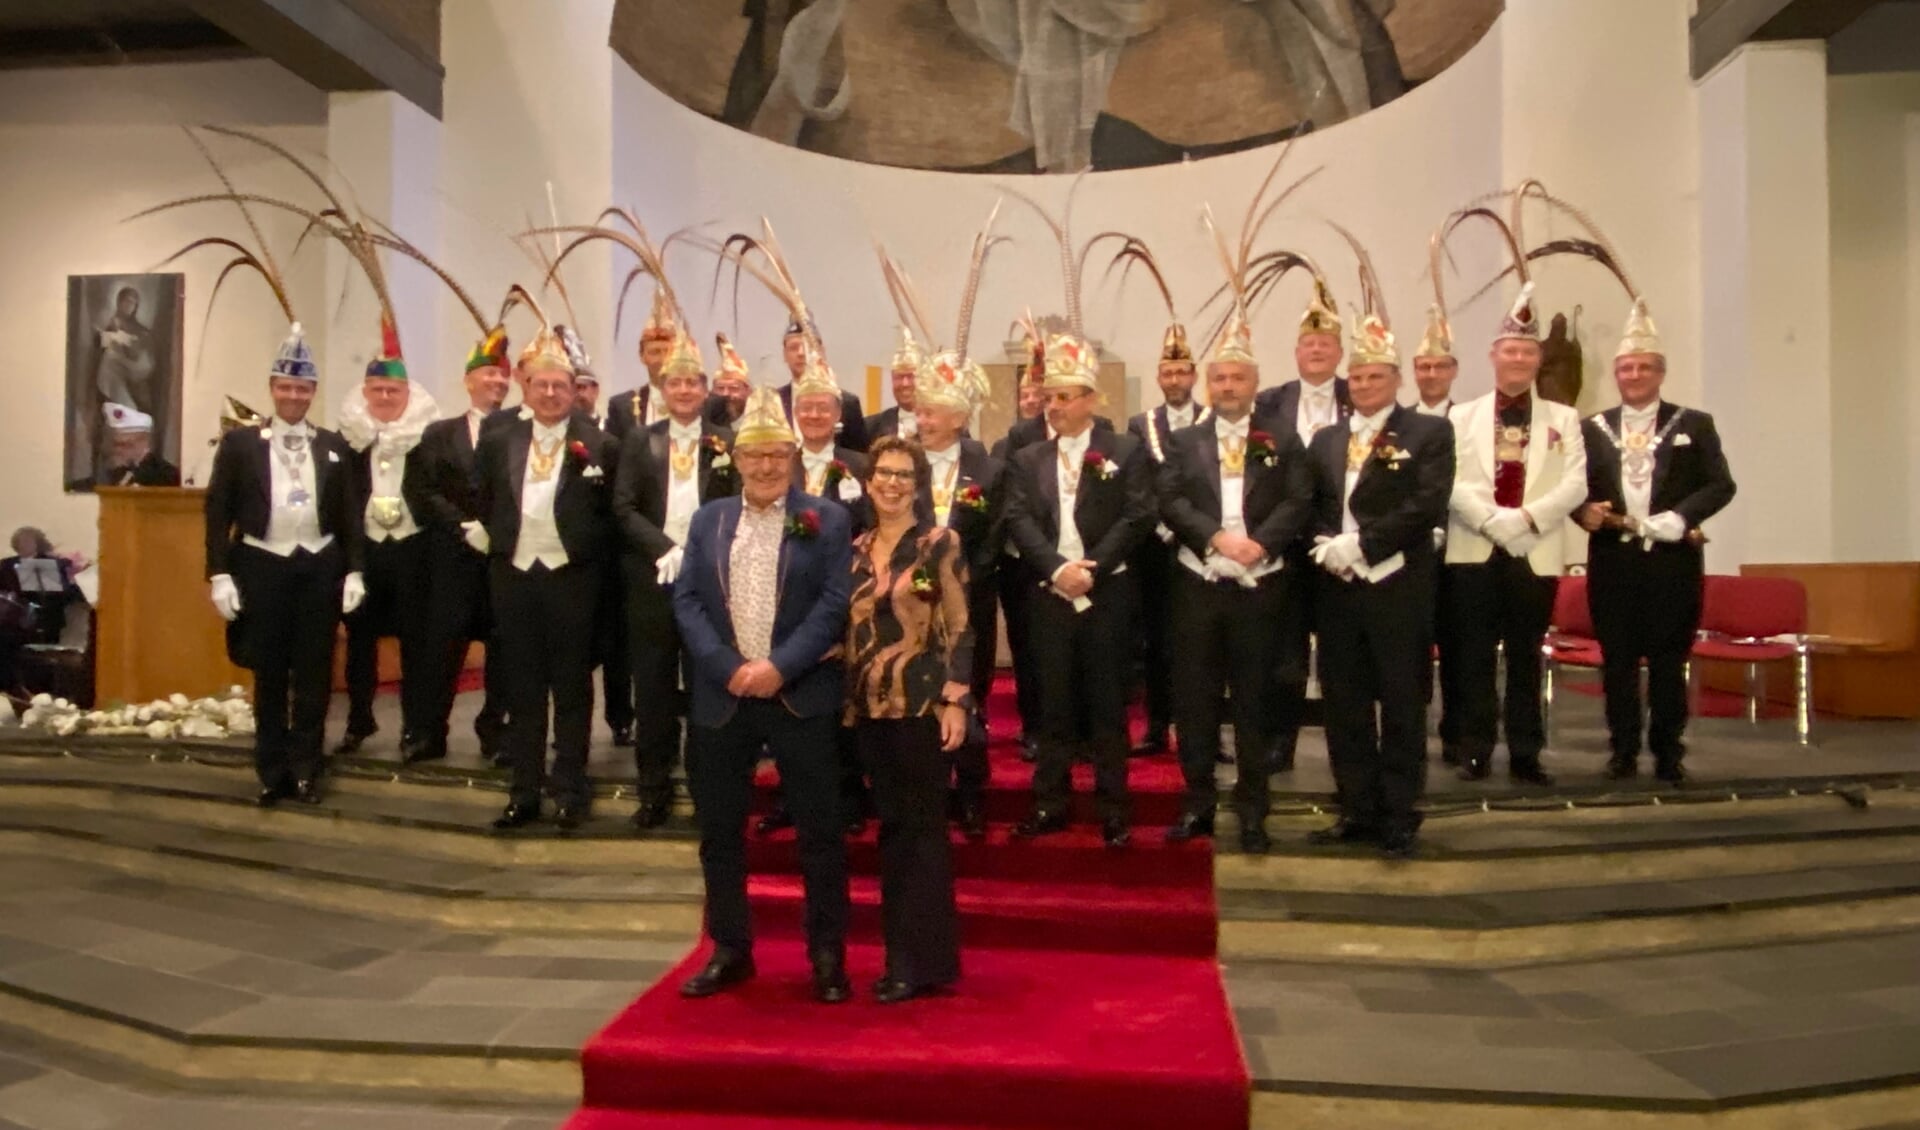 De nieuwste drager van de Gouden Narrenkap met op de achtergrond de vorsten van de aanwezige verenigingen. (Foto: Jos Gröniger)